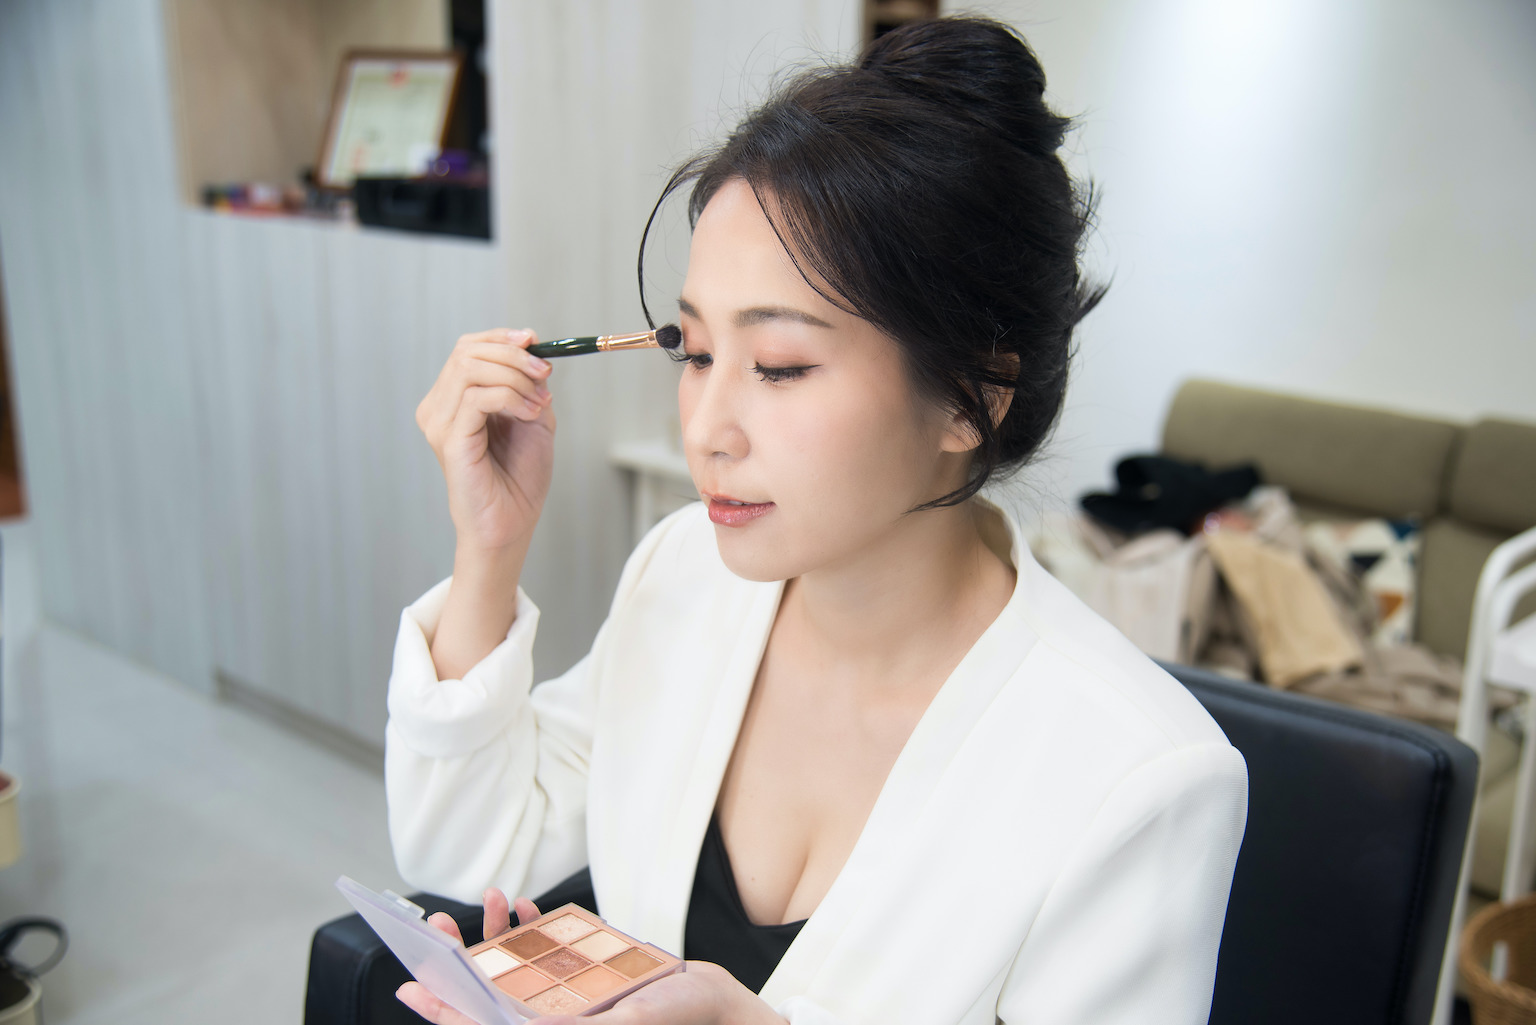 完整化妝步驟教學 專業彩妝師慣用的步驟說明 新手也能快速學會